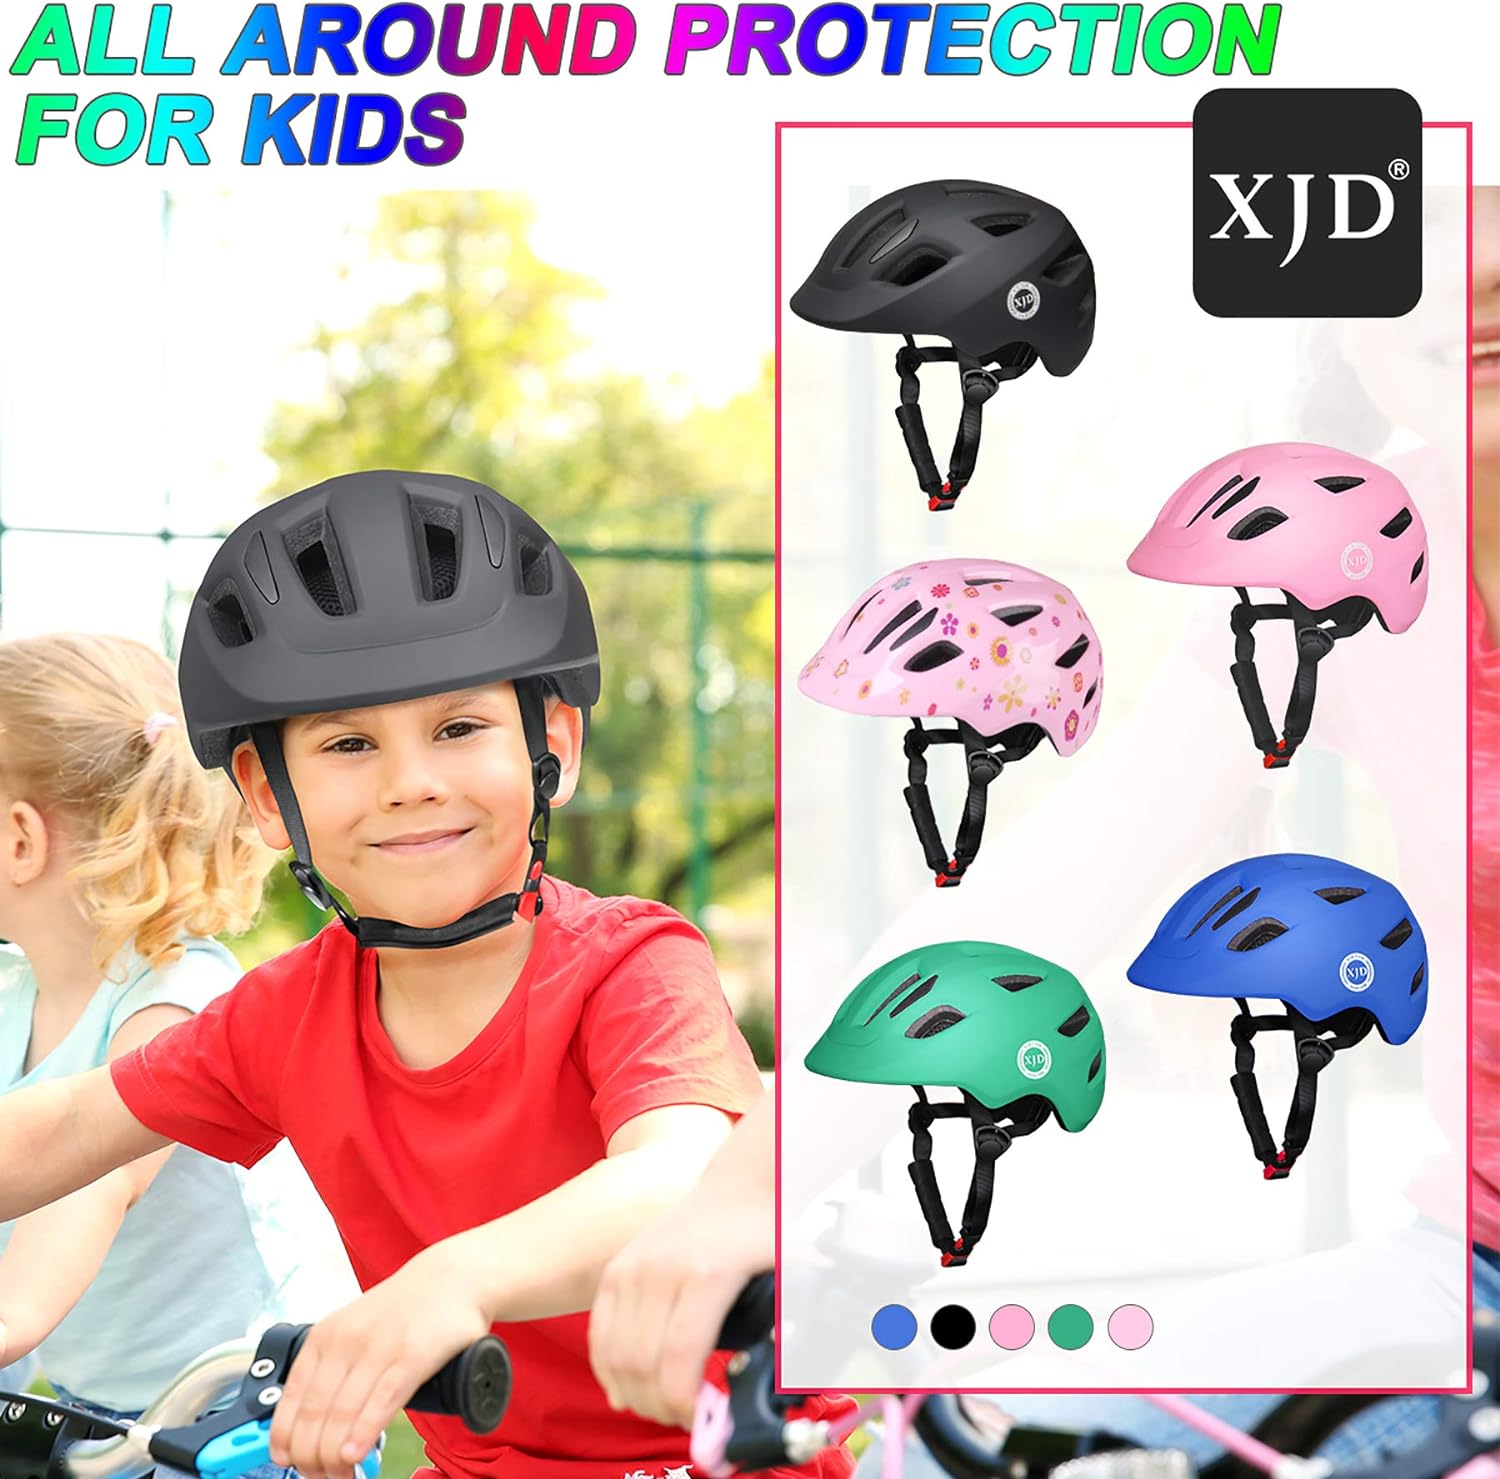 XJD Toddler Helmet Kids Bike Helmet Baby Multi-Sport Adjustable Skateboard Helmet for Kids Boys Girls Infant Helmet Lightweight for Age 1 and Older